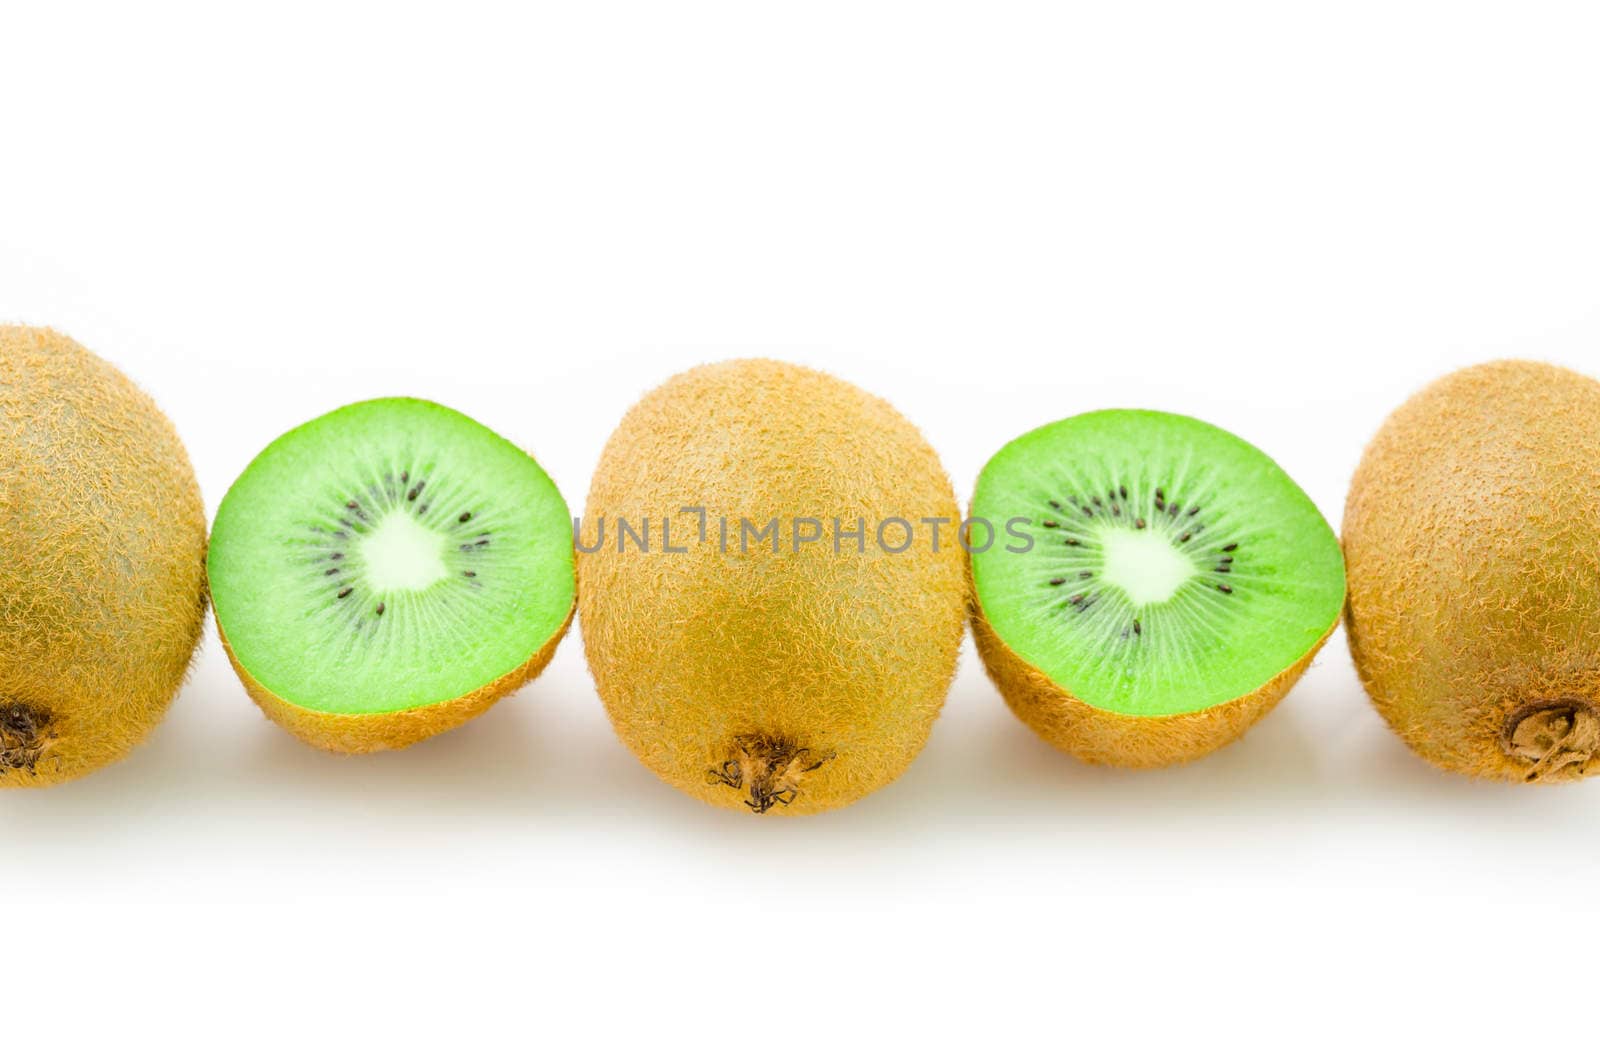 Row of Fresh kiwi fruit and half kiwi on white background.